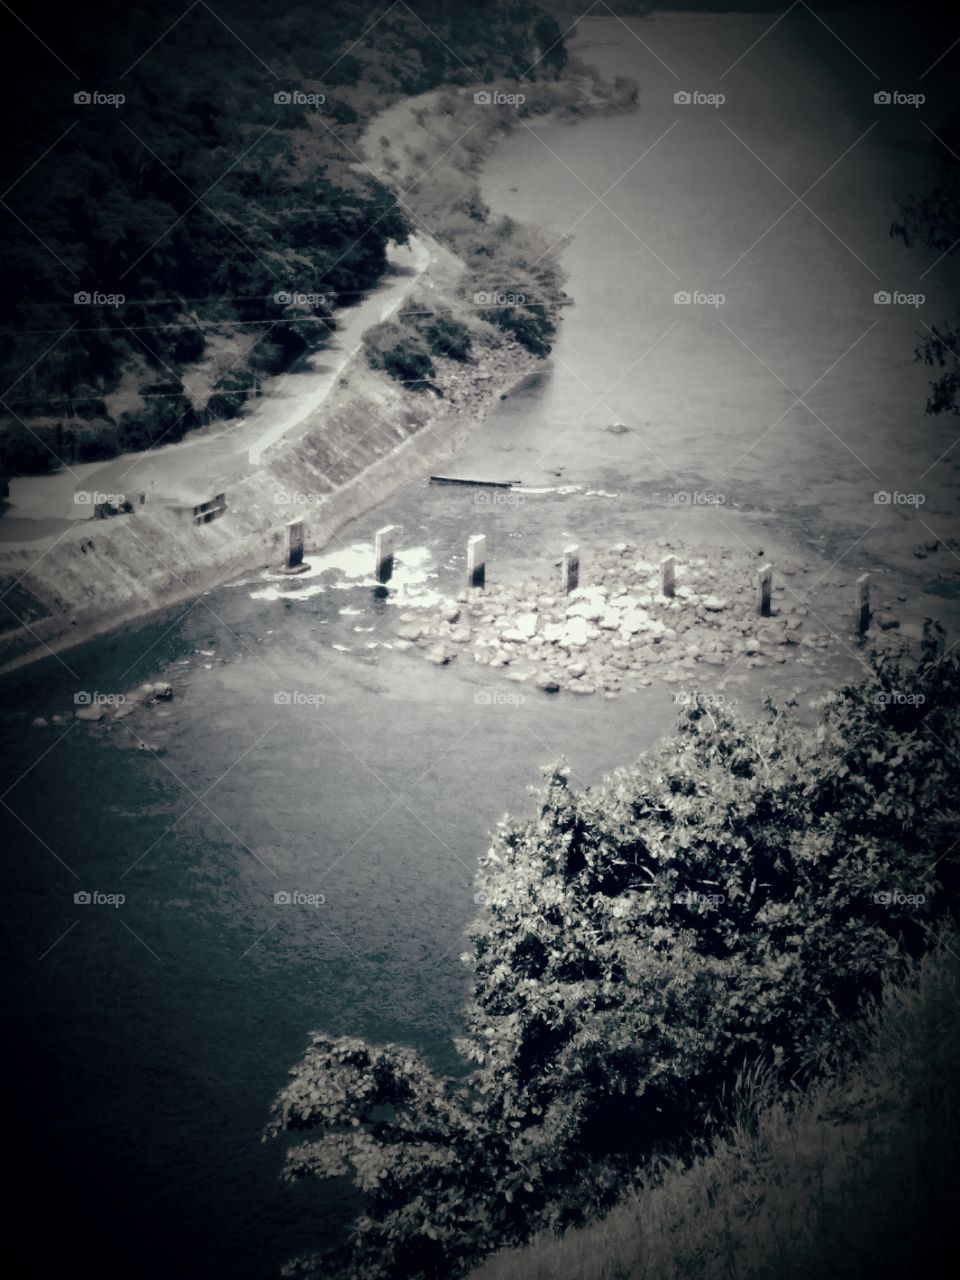 Rantabe Randenigala Dam..
Sri Lanka..